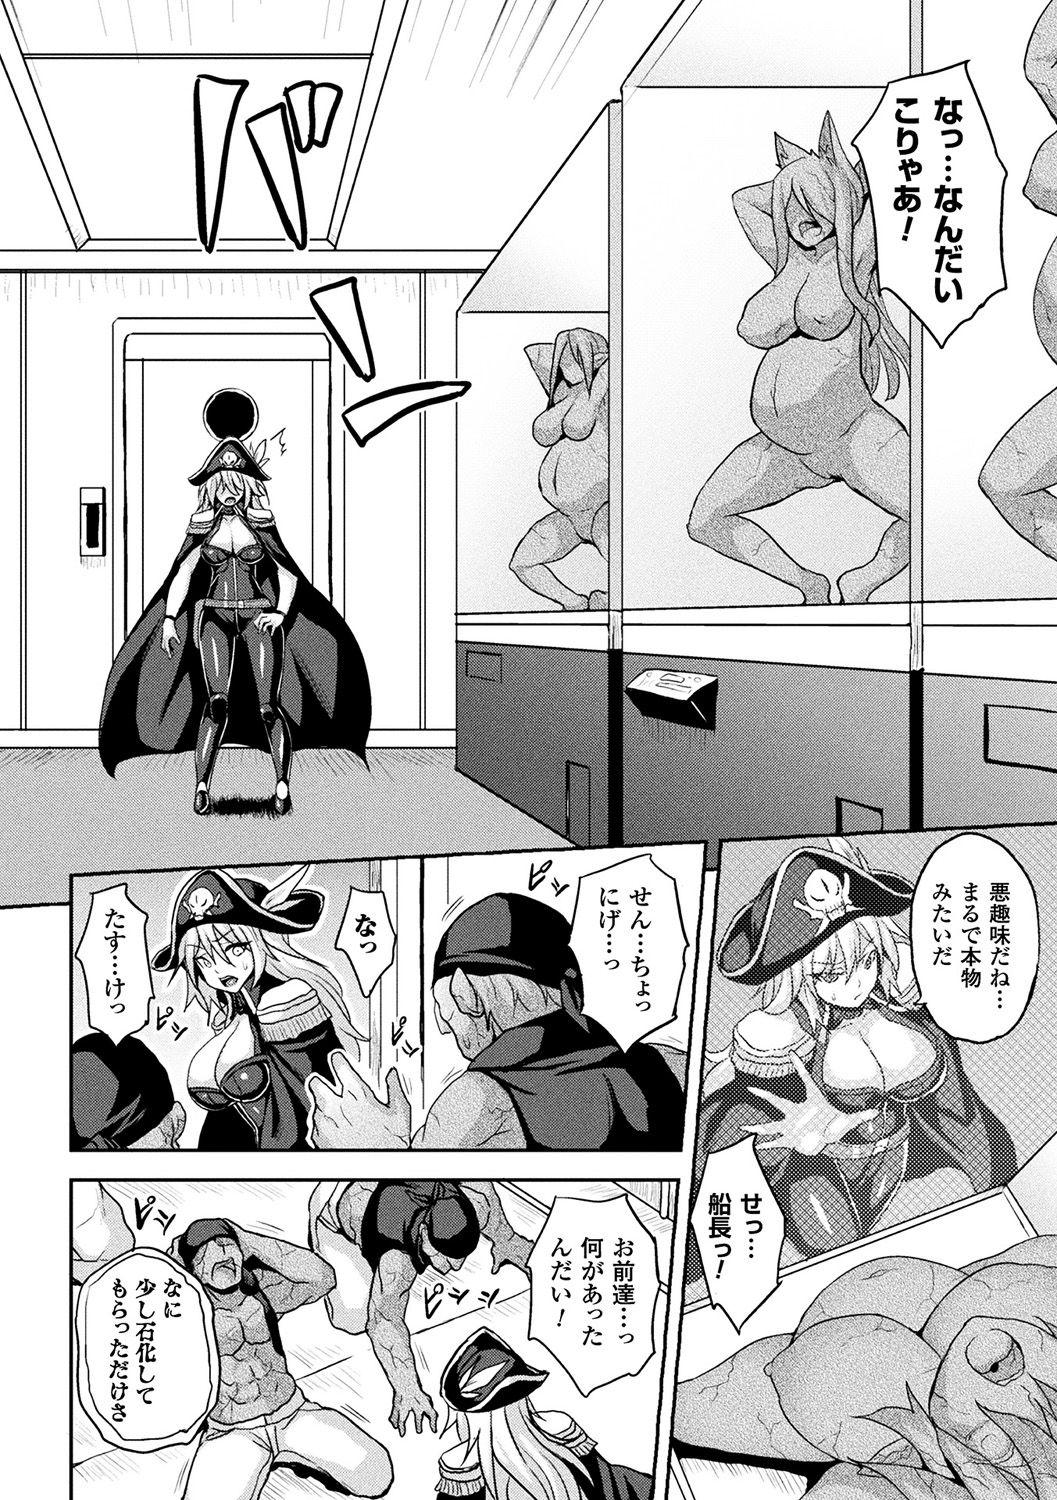 Vergon [Anthology] Bessatsu Comic Unreal Sekka END ~Zetsubou no Naka de Sekizou e to Kaerareru Shoujo-tachi~ Vol. 2 [Digital] Spooning - Page 6